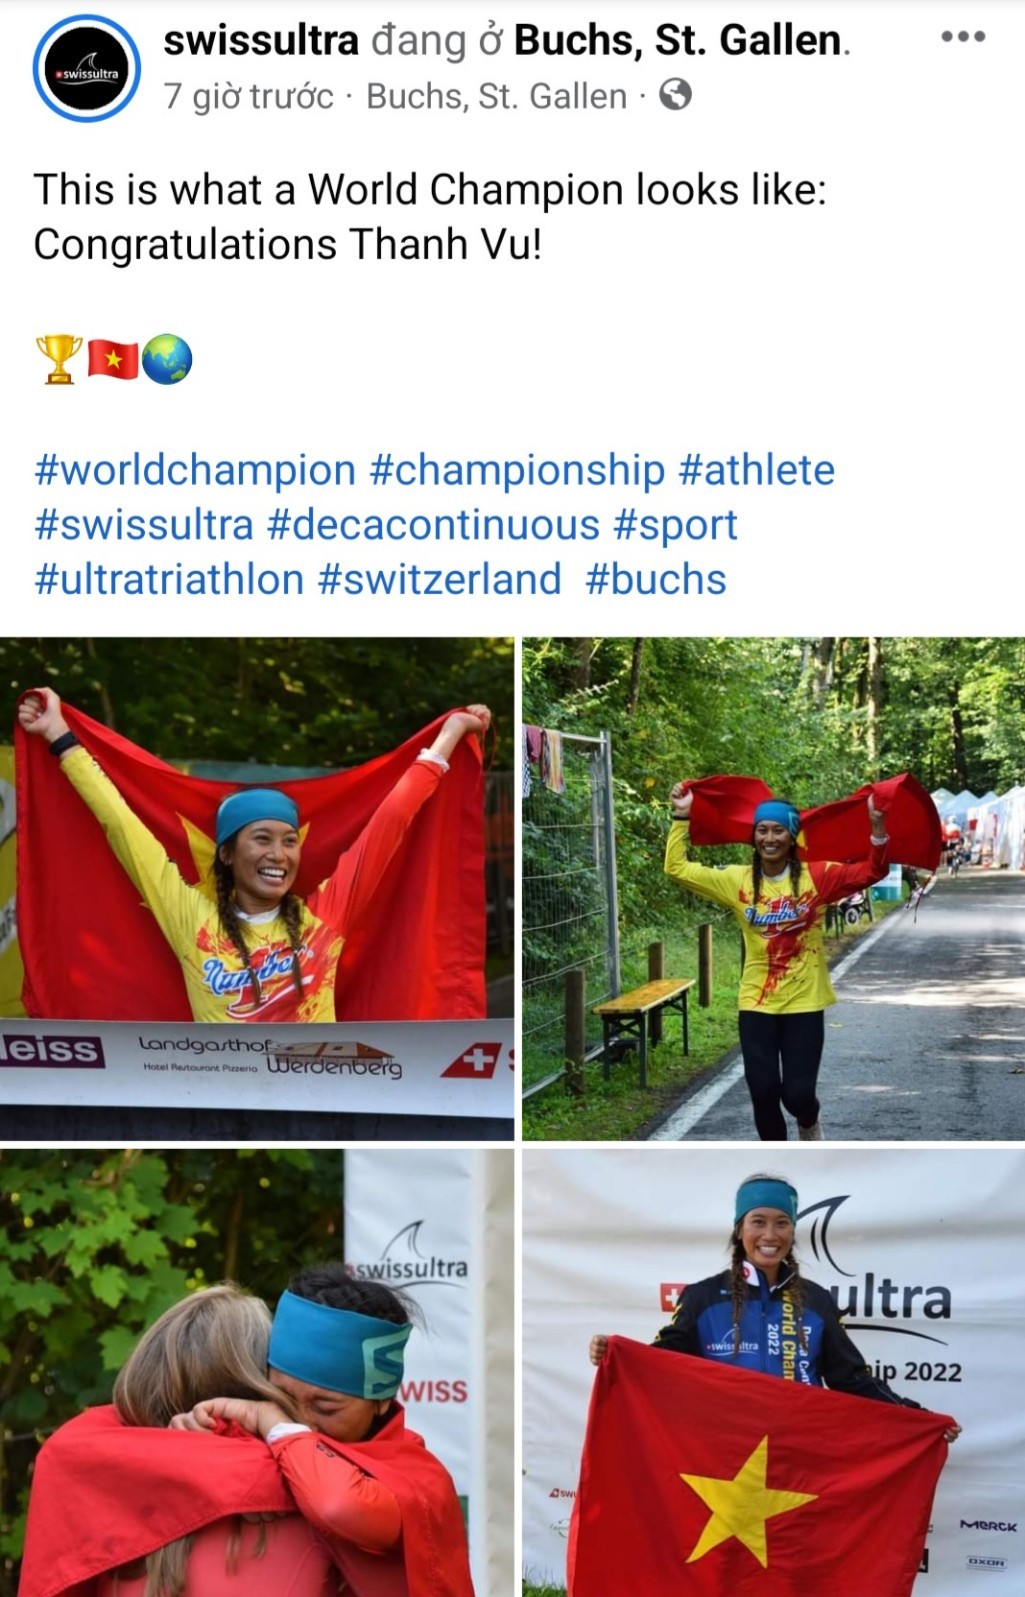 THP Group Ambassador Thanh Vu - First Vietnamese woman to win worlds  toughest triathlon